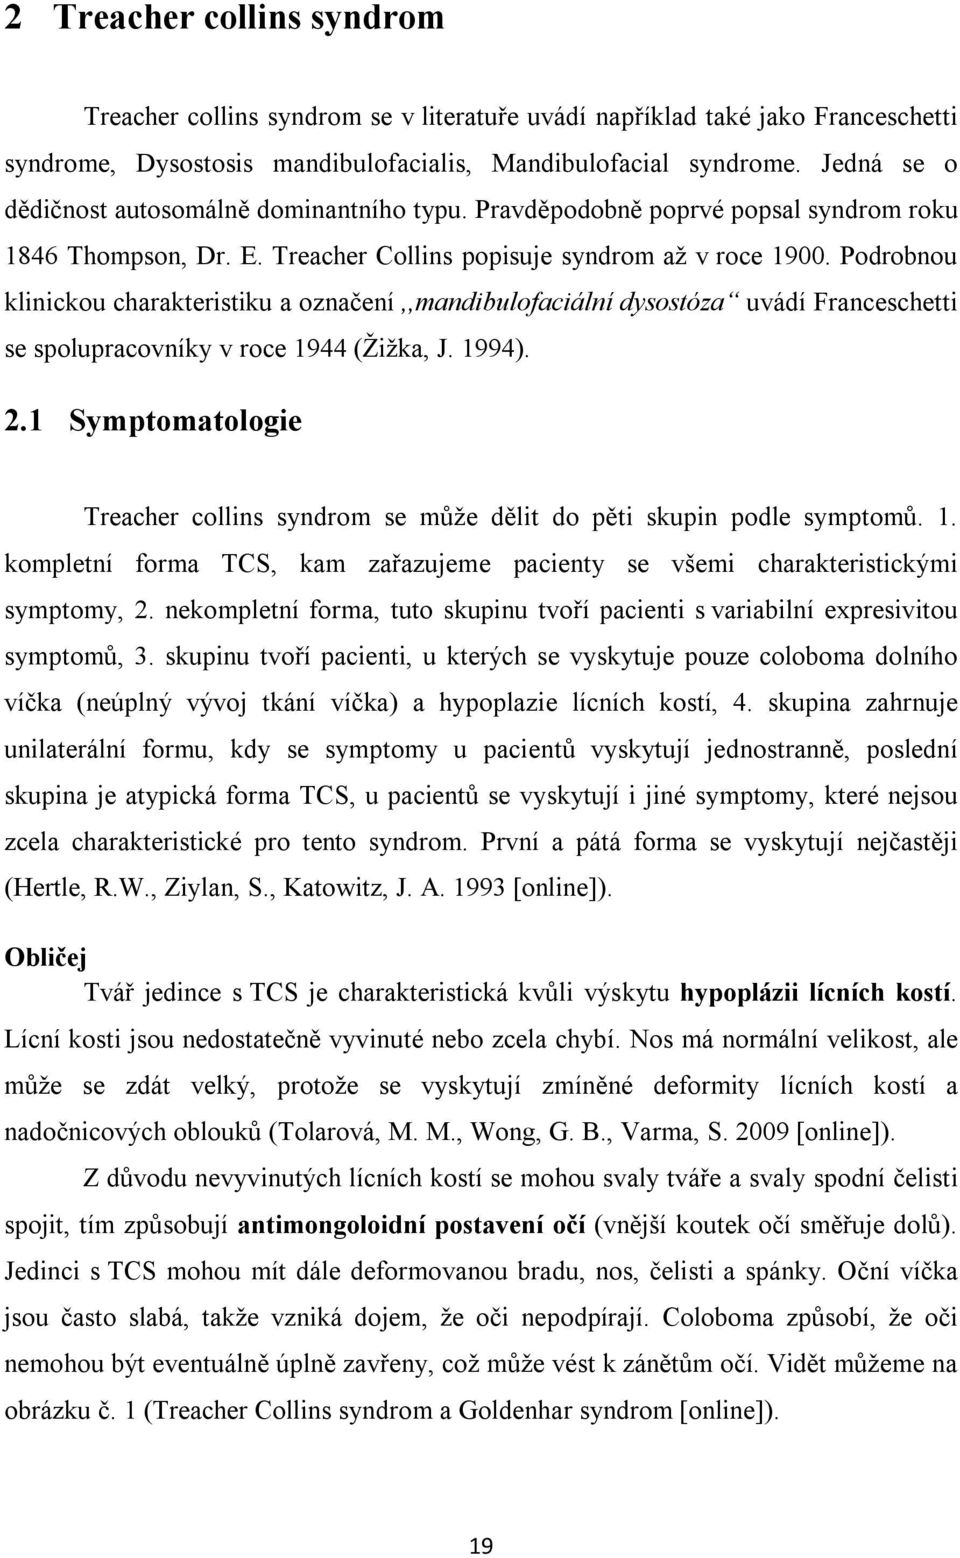 Podrobnou klinickou charakteristiku a označení,,mandibulofaciální dysostóza uvádí Franceschetti se spolupracovníky v roce 1944 (Žižka, J. 1994). 2.